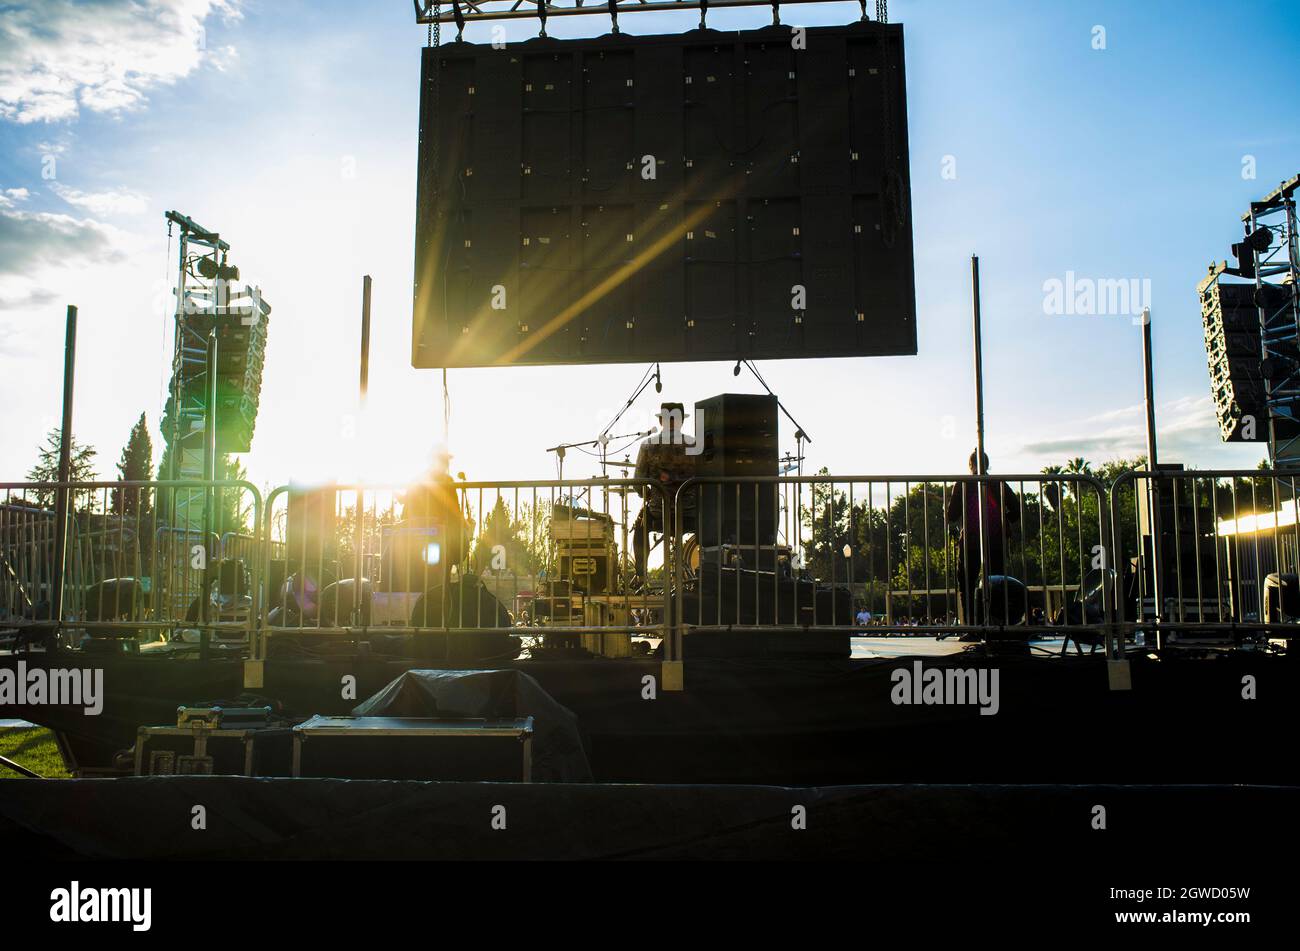 Die Performance bei Tag ist von der hinteren Bühne aus gesehen sehr rosig. Sonnenuntergang blauer Himmel Hintergrund Stockfoto